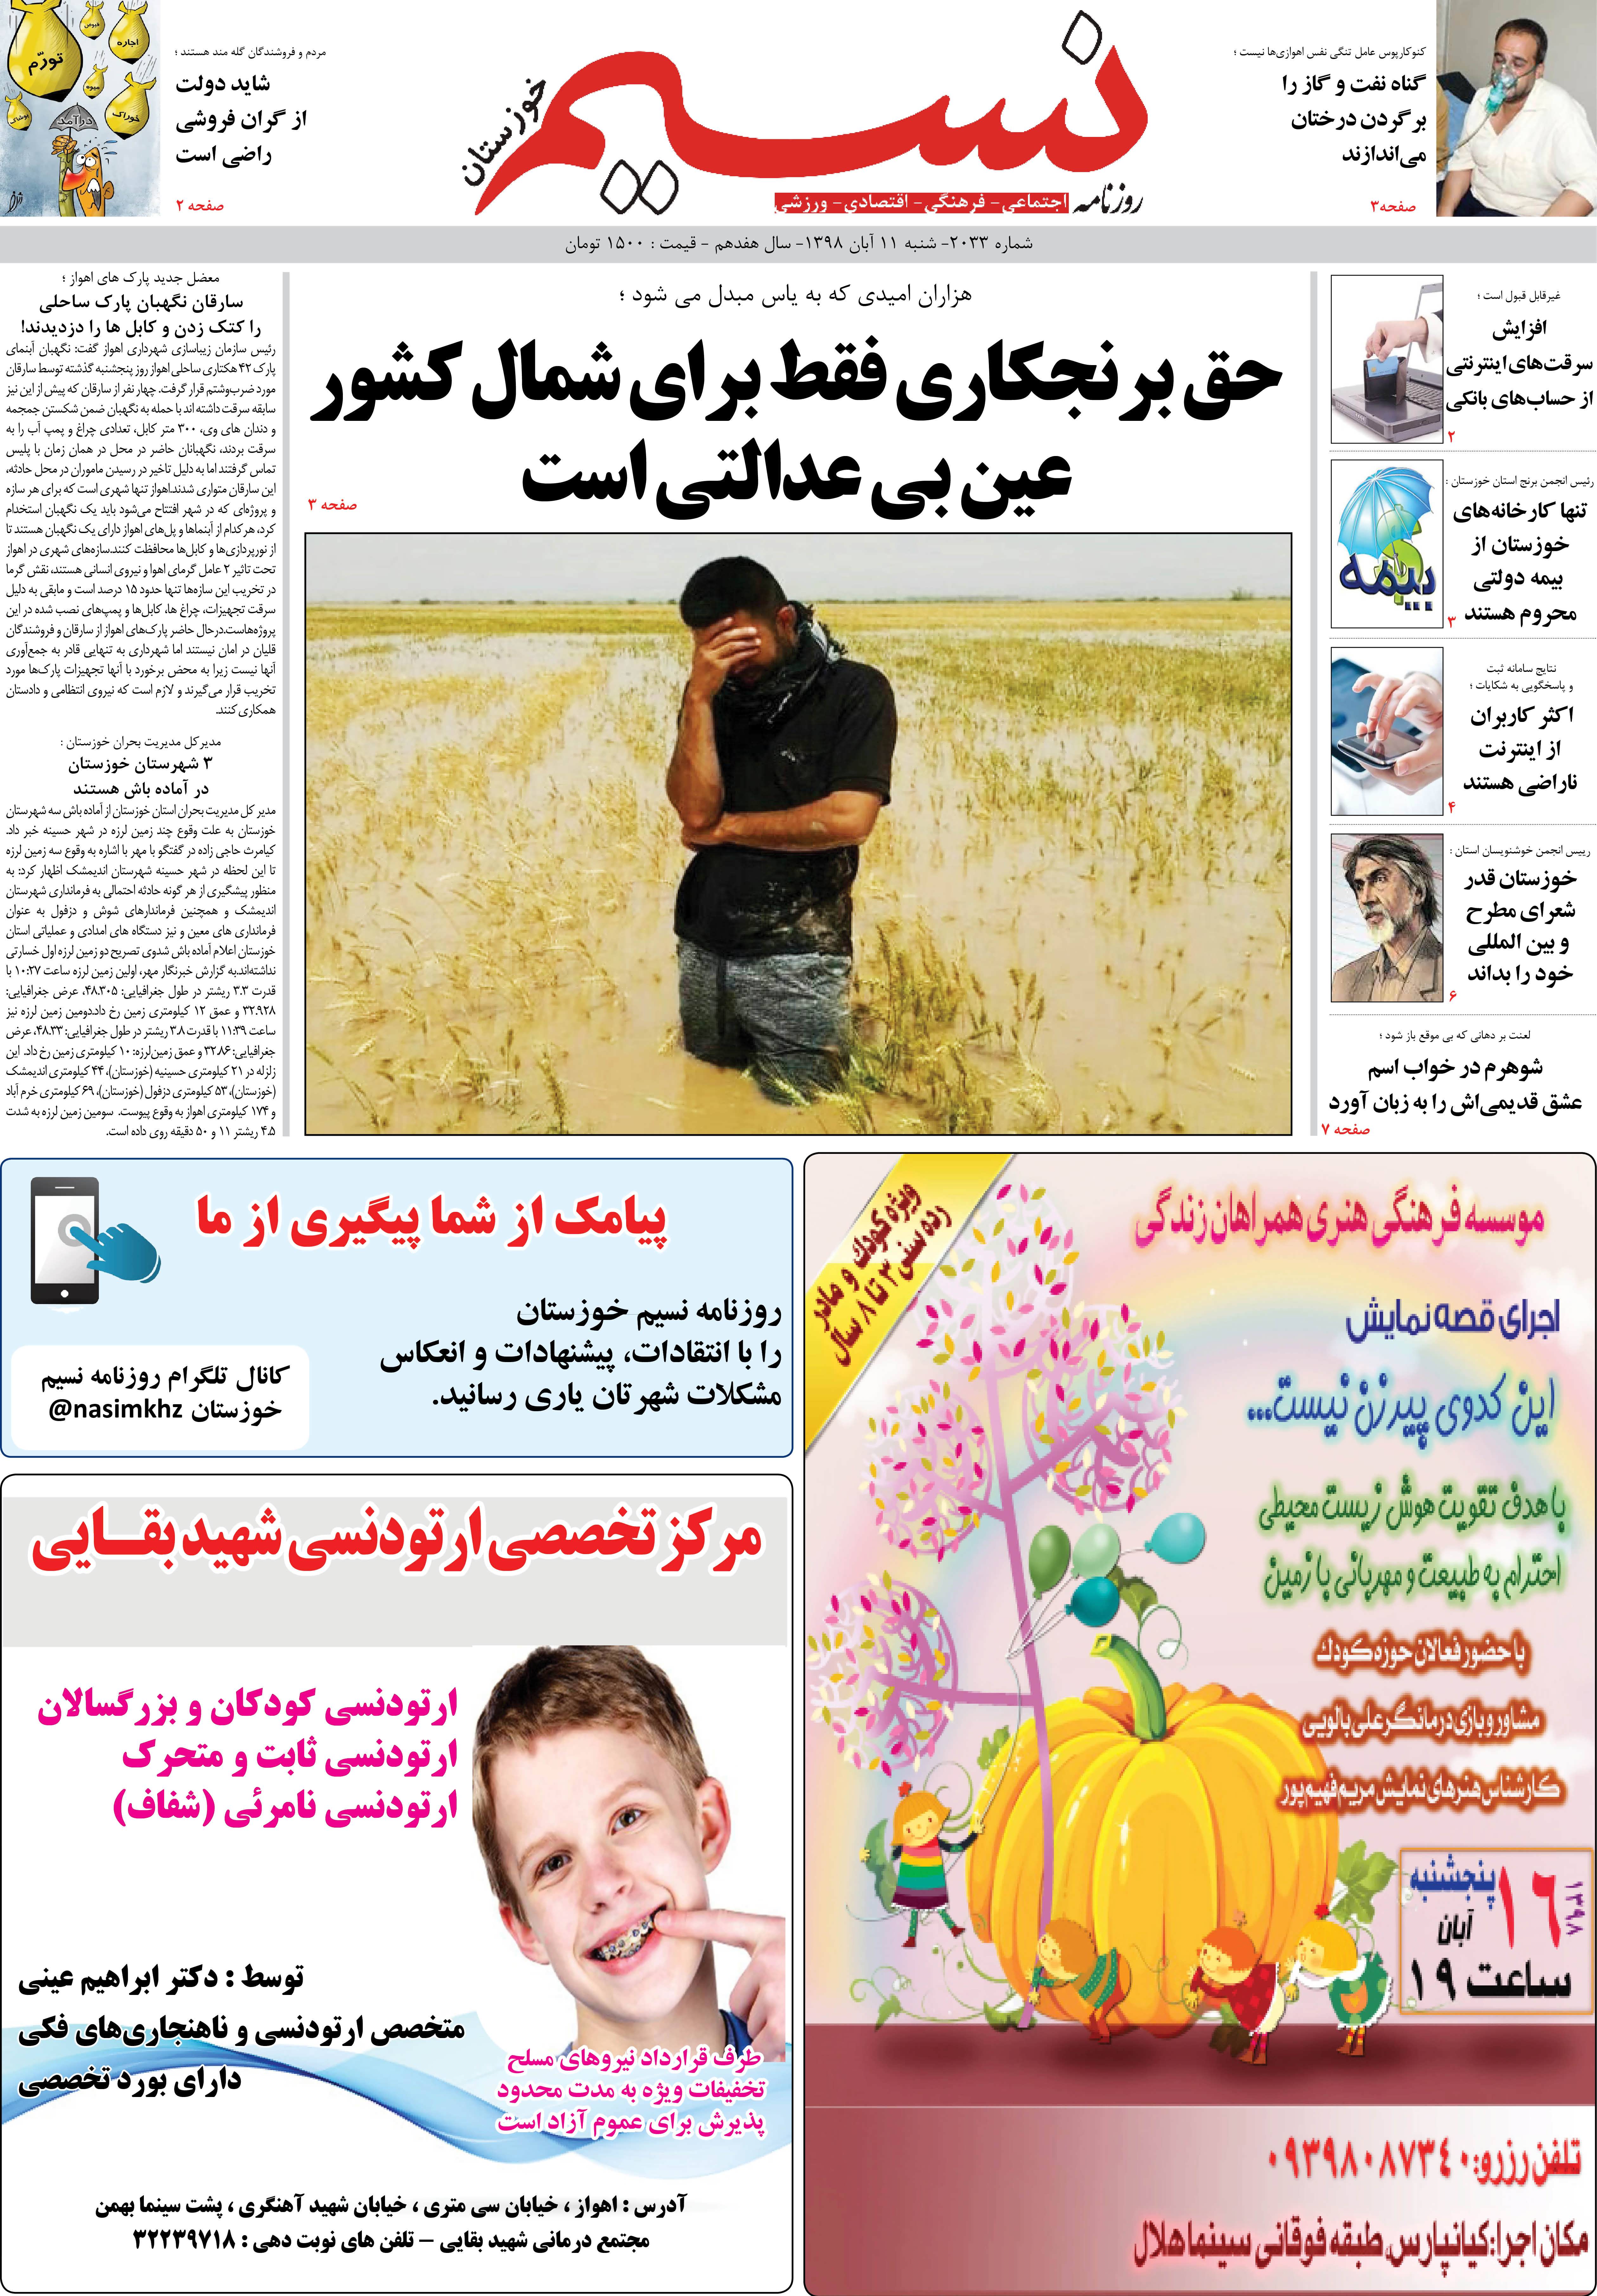 صفحه اصلی روزنامه نسیم شماره 2033 